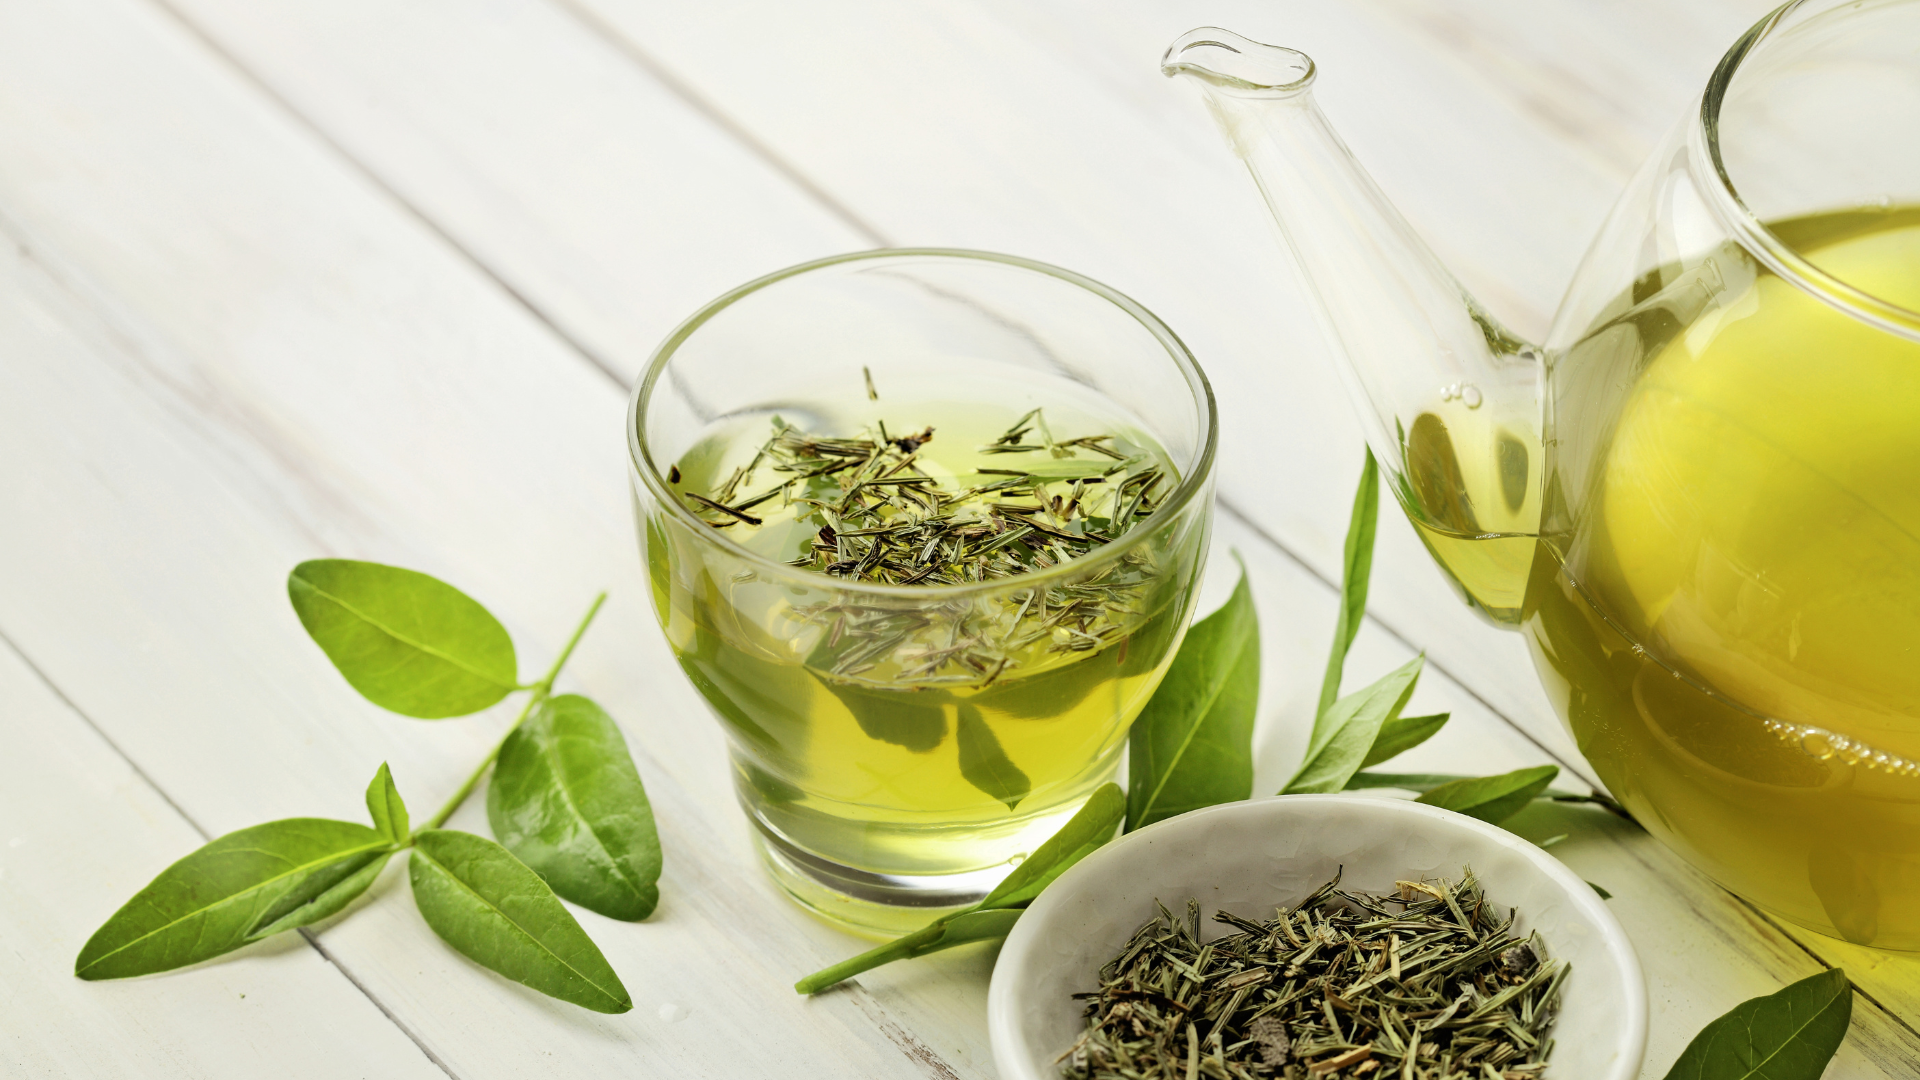 Các loại trà xanh phổ biến trên thị trường và tác dụng của chúng